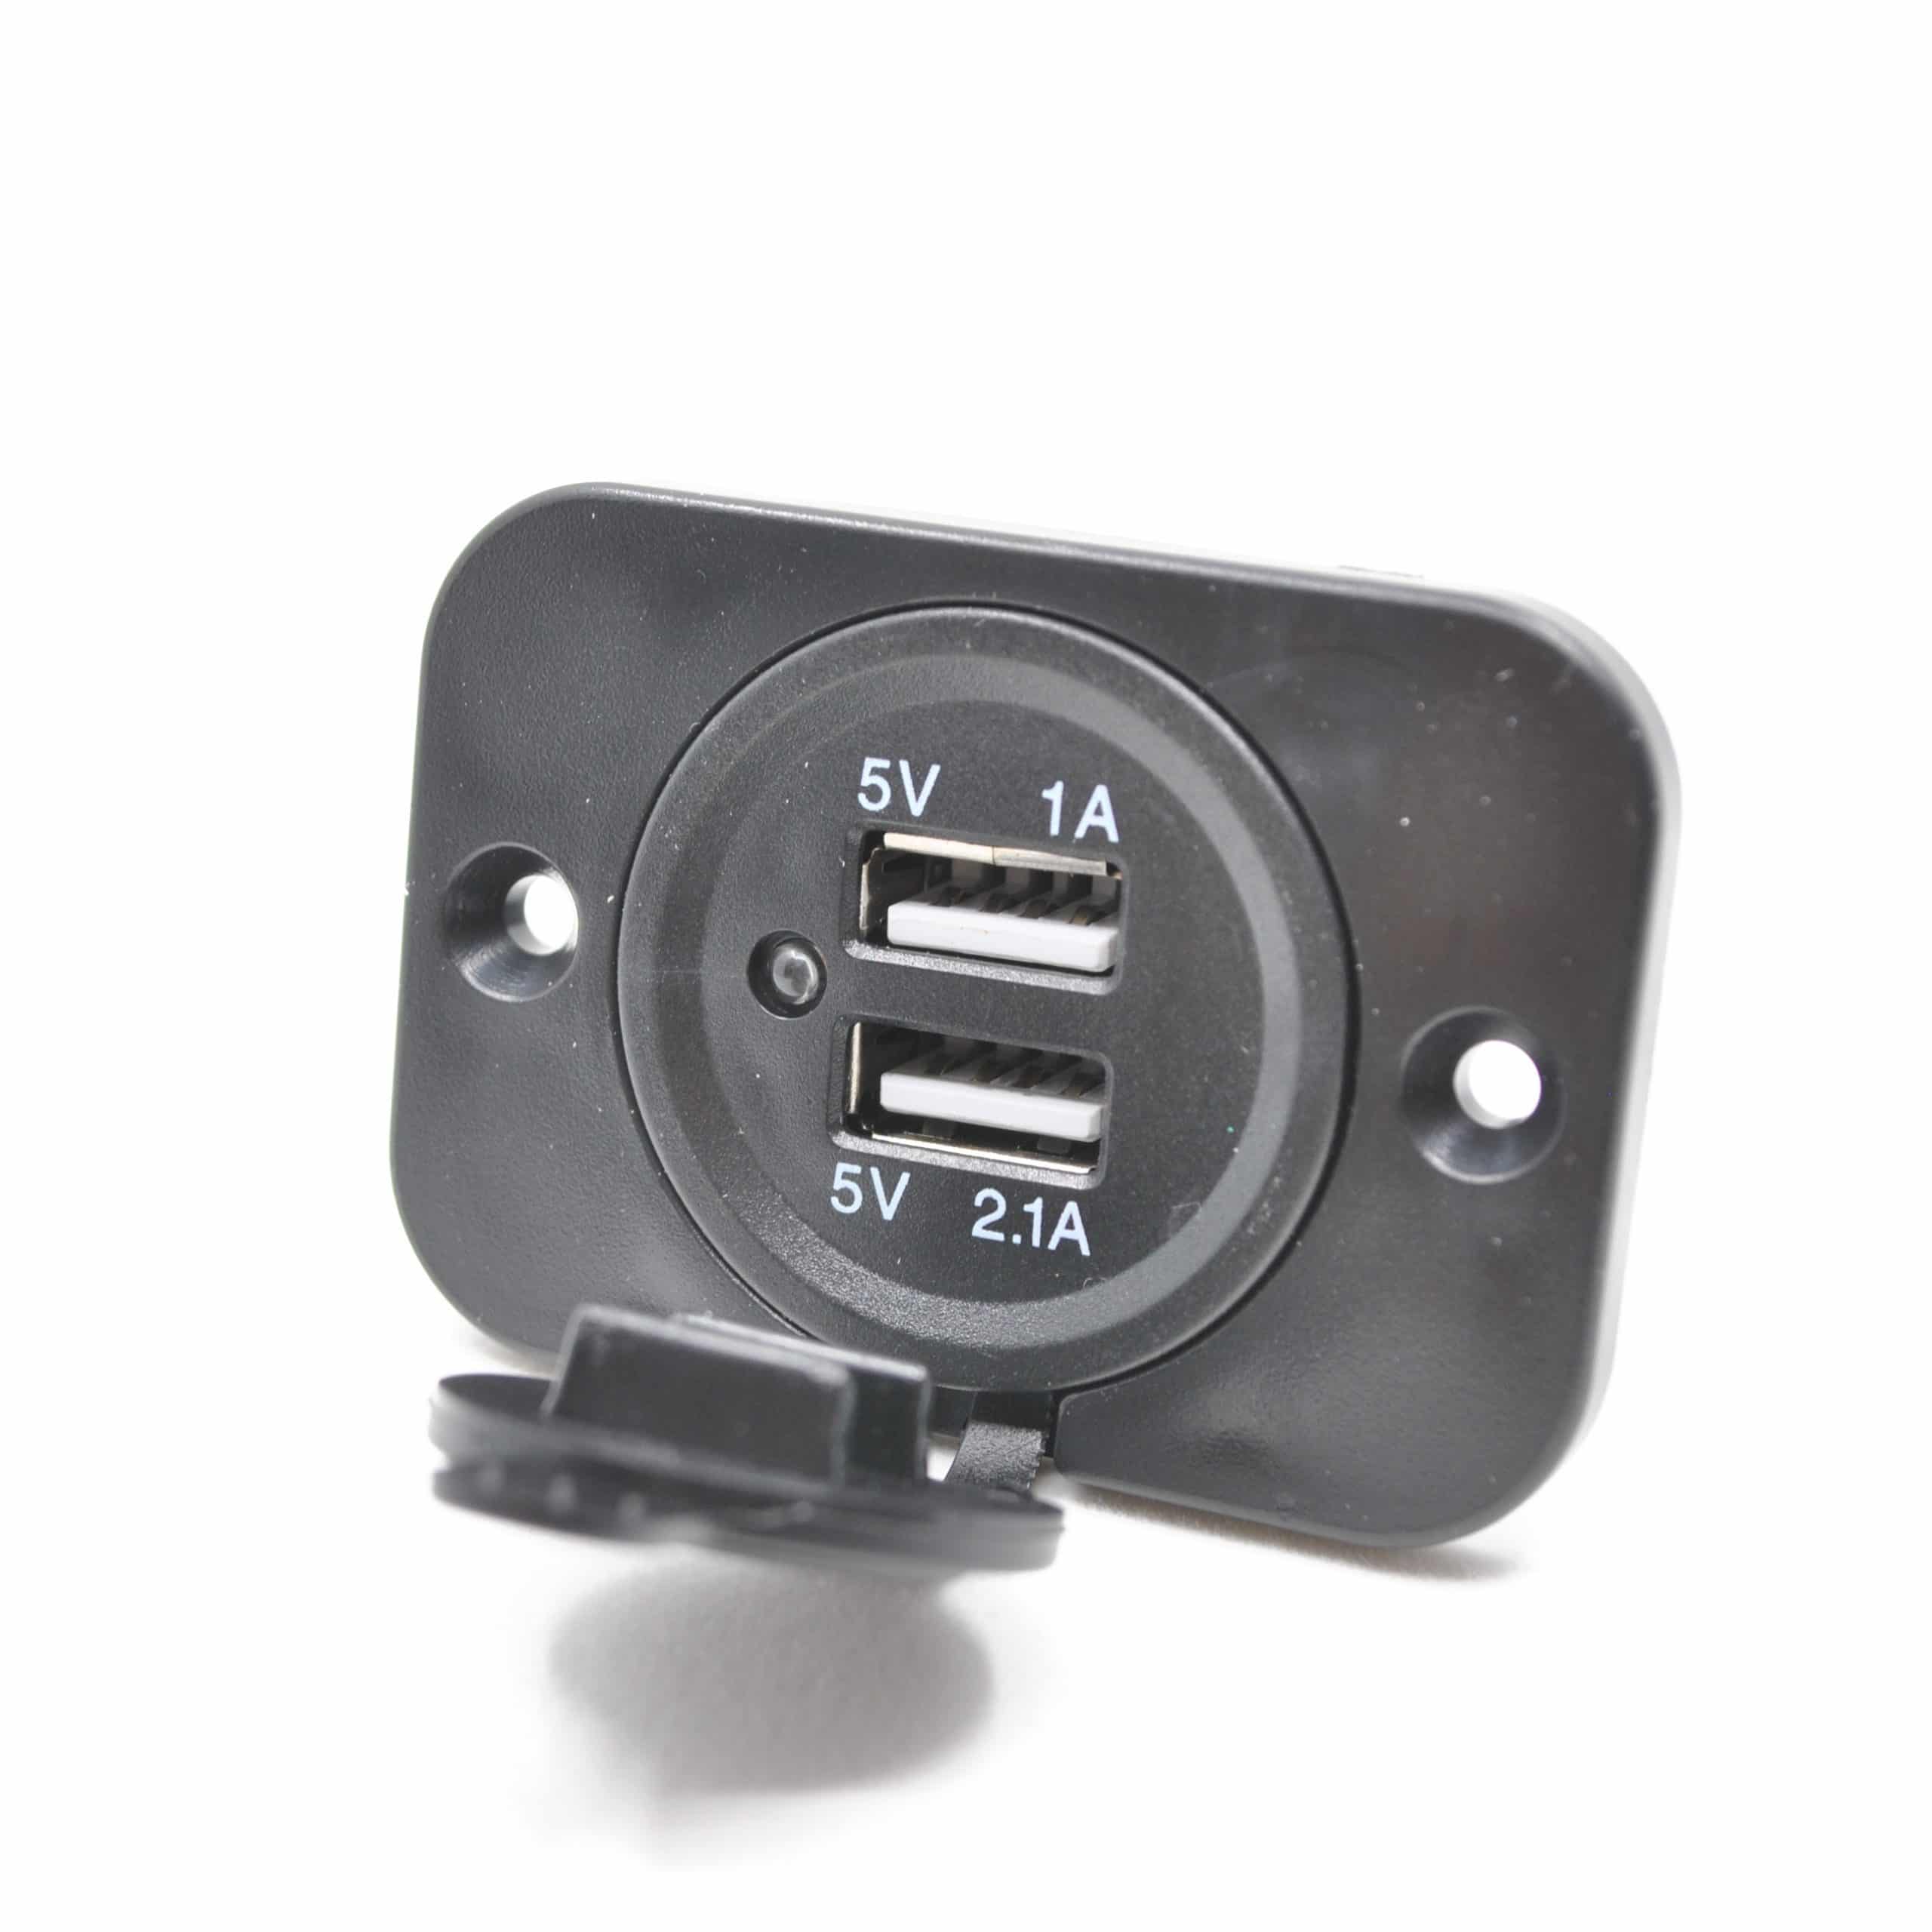 Doppel-USB Einbausteckdose, 12V / 24V, 2,1A + 1,0A, anthrazit